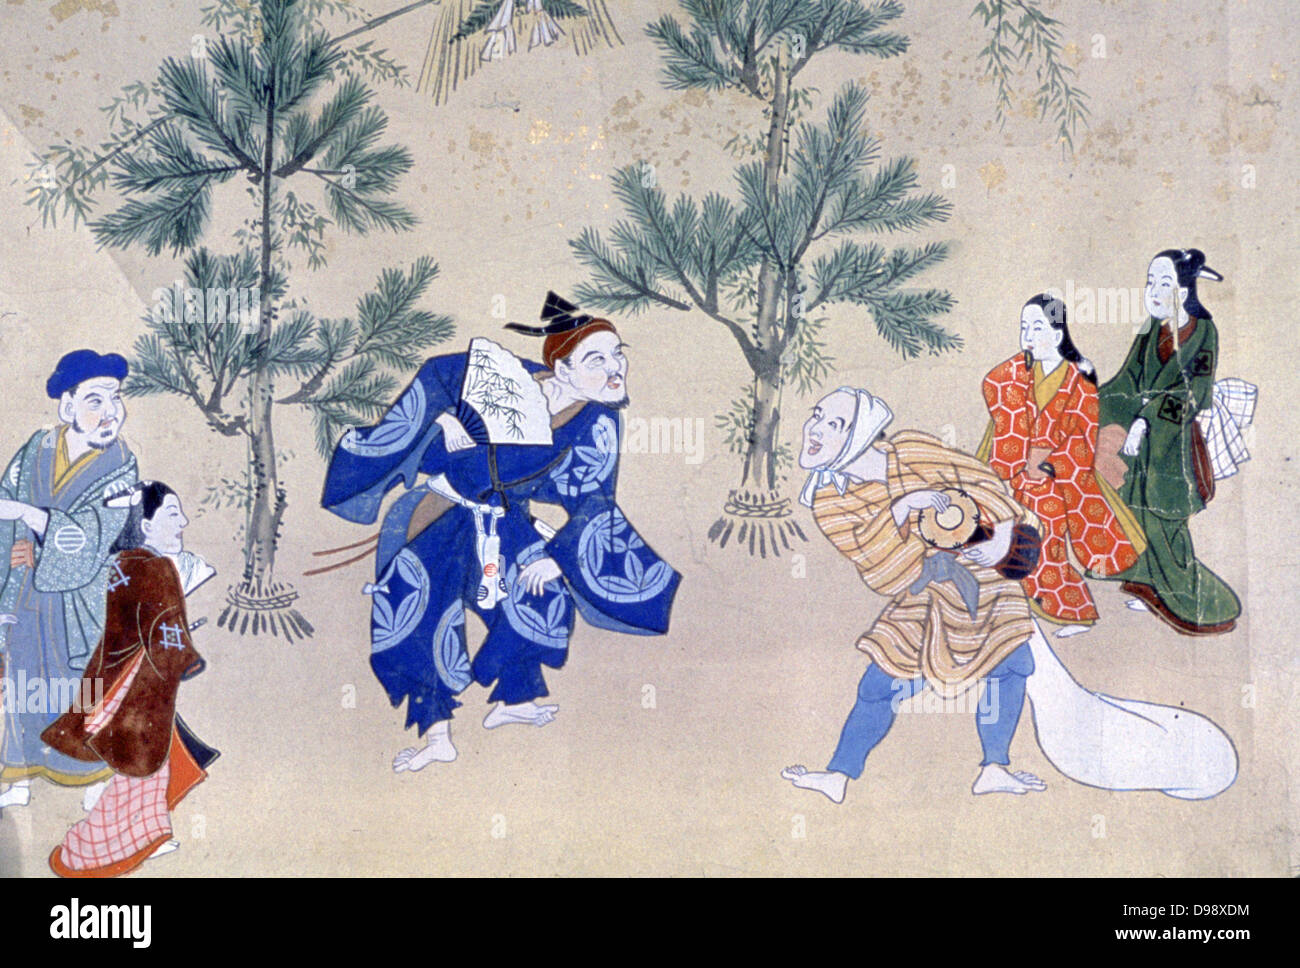 Événements dans l'année du monde flottant", 1695-1700. Encre, couleurs et l'or. Hishikawa Moroshige (1684-1704) artiste japonais. Banque D'Images